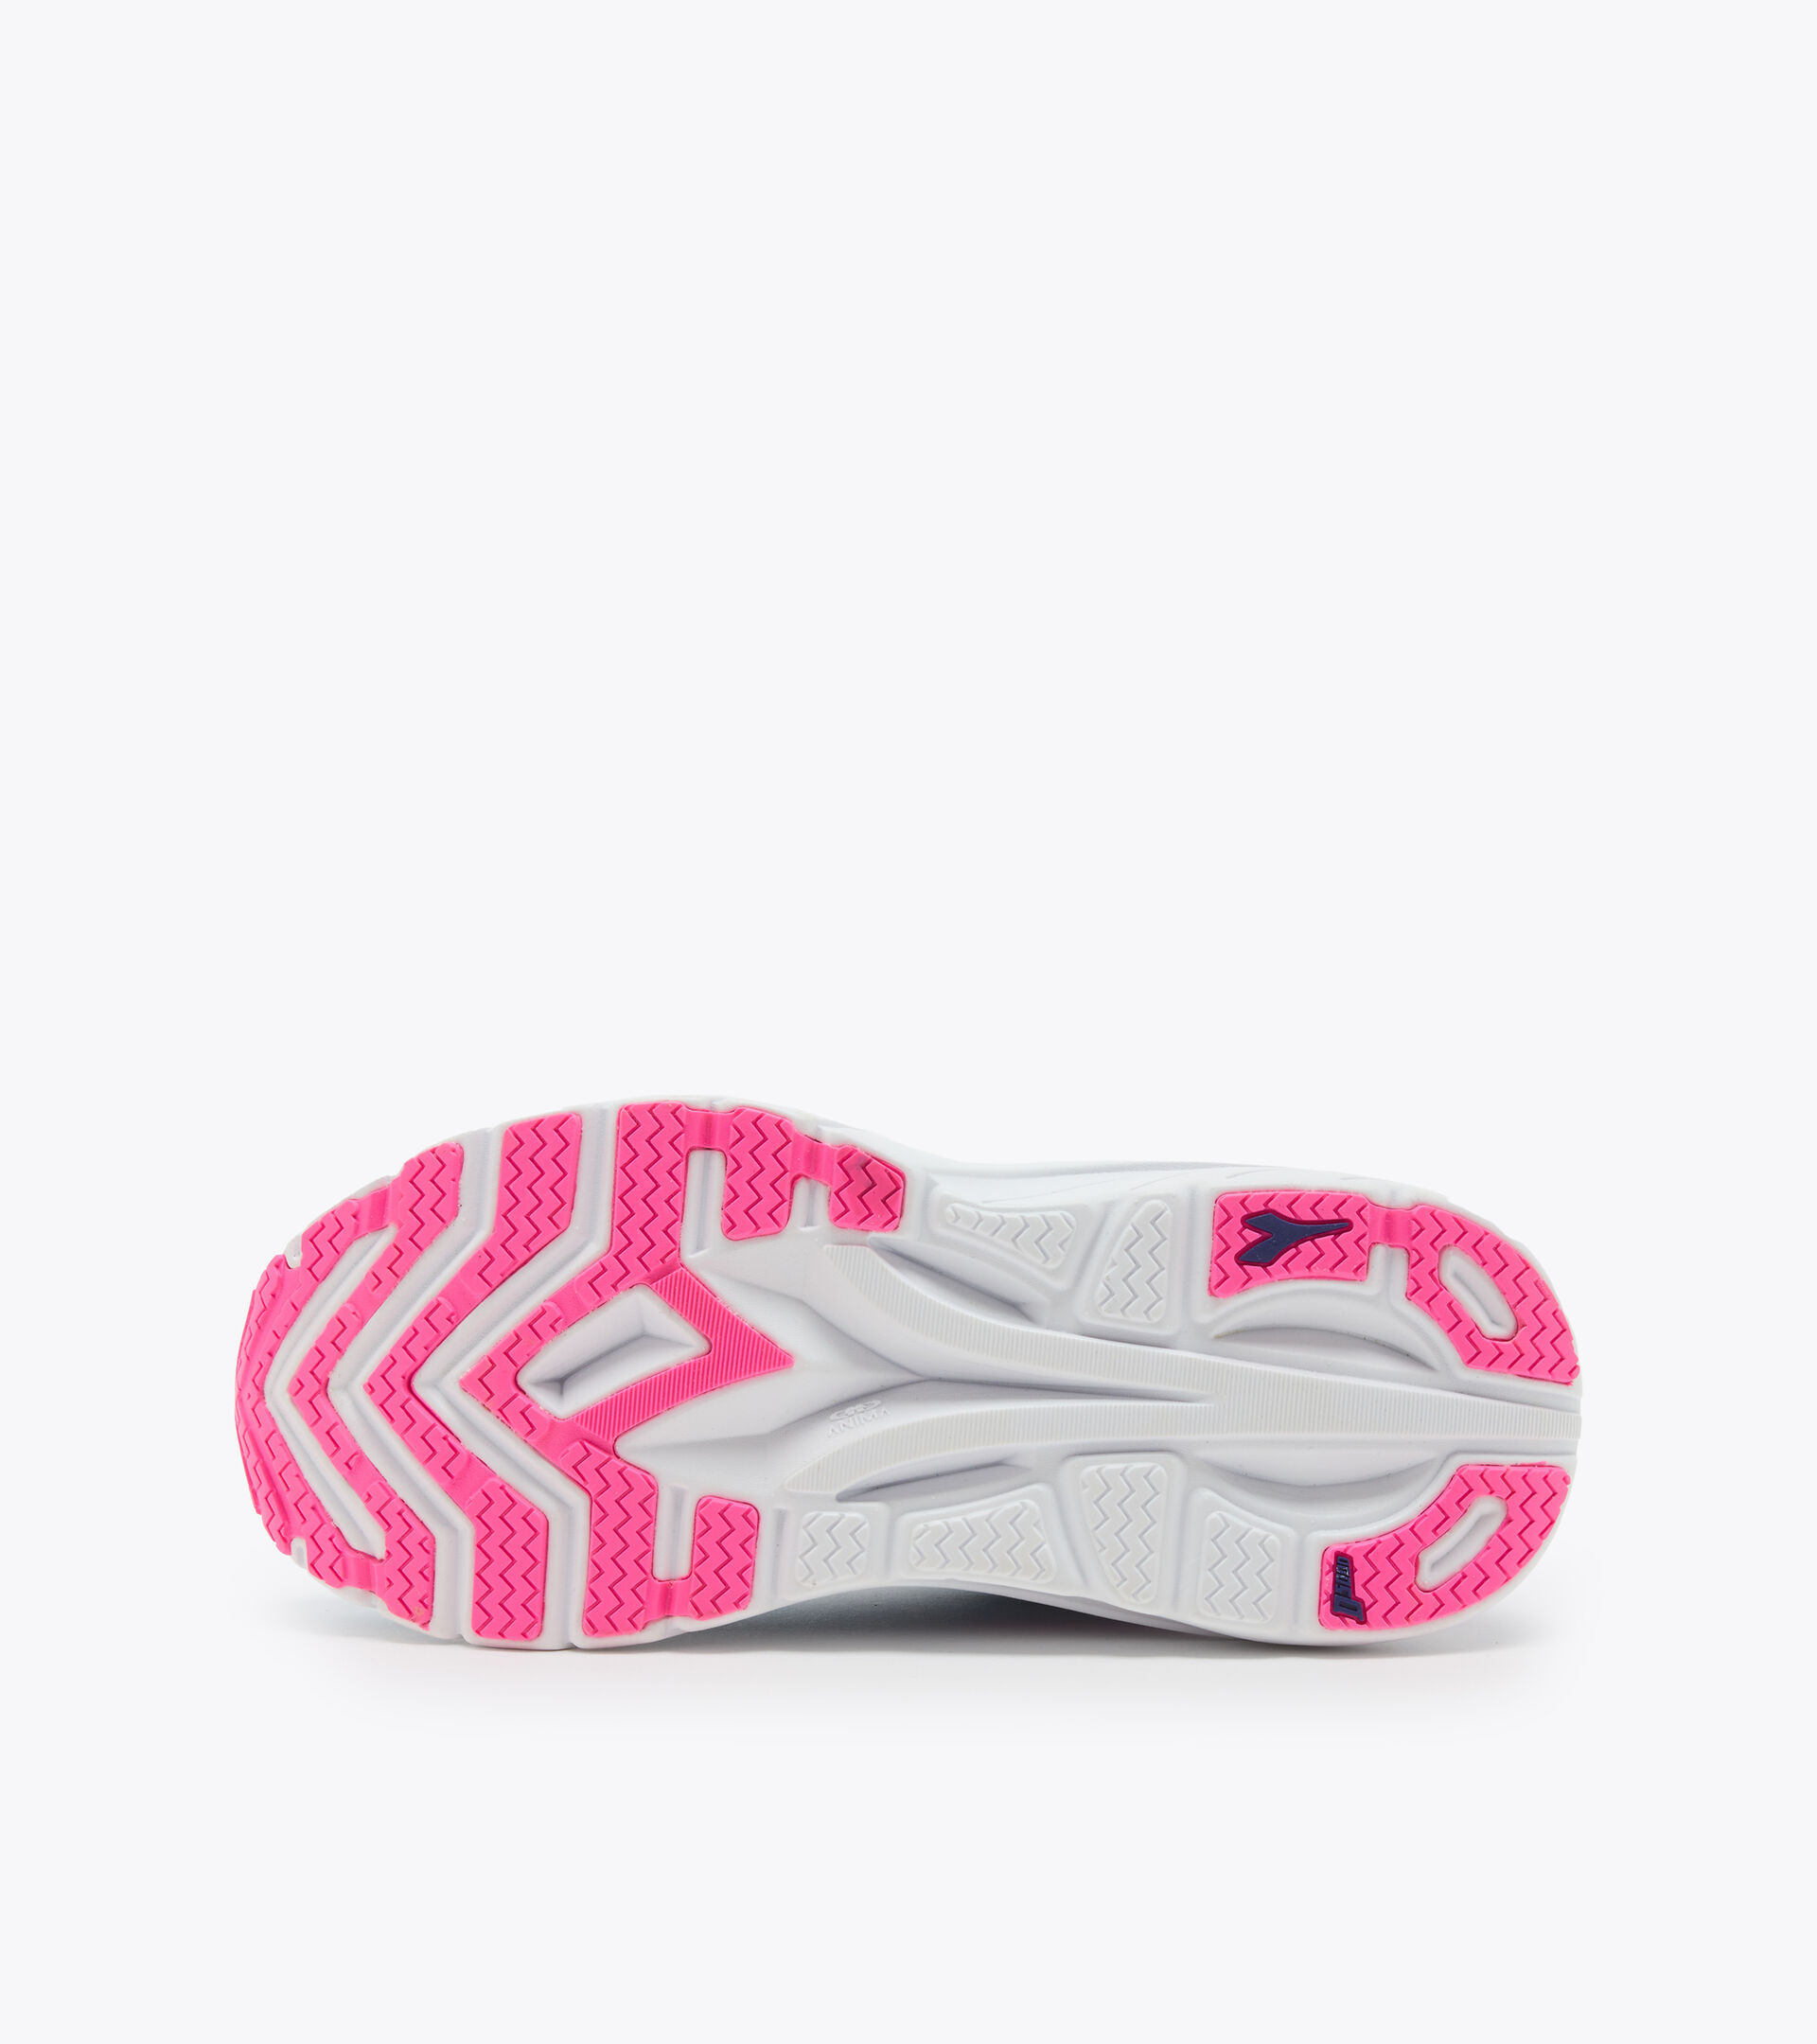 Chaussures de running - Femme EQUIPE NUCLEO W BONNIE BLEU/ROSE FLUO - Diadora